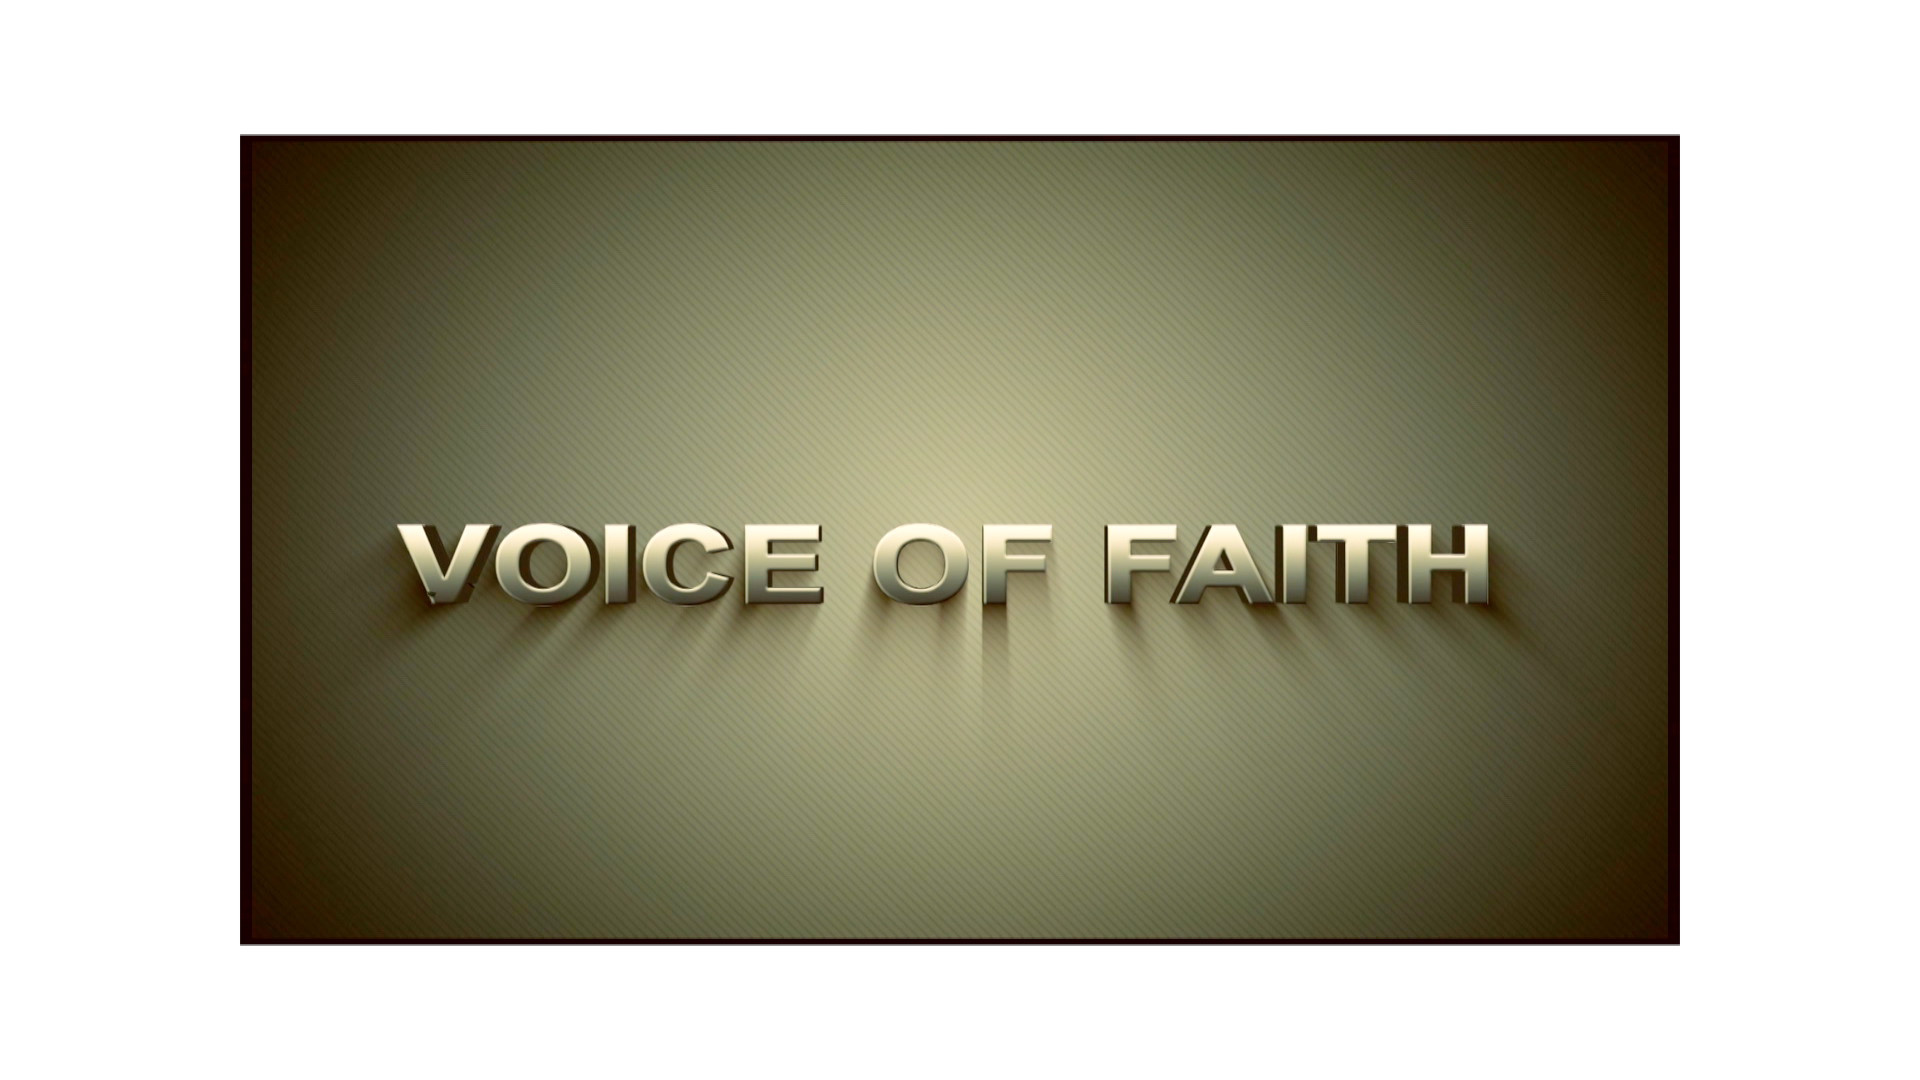 Voice of faith